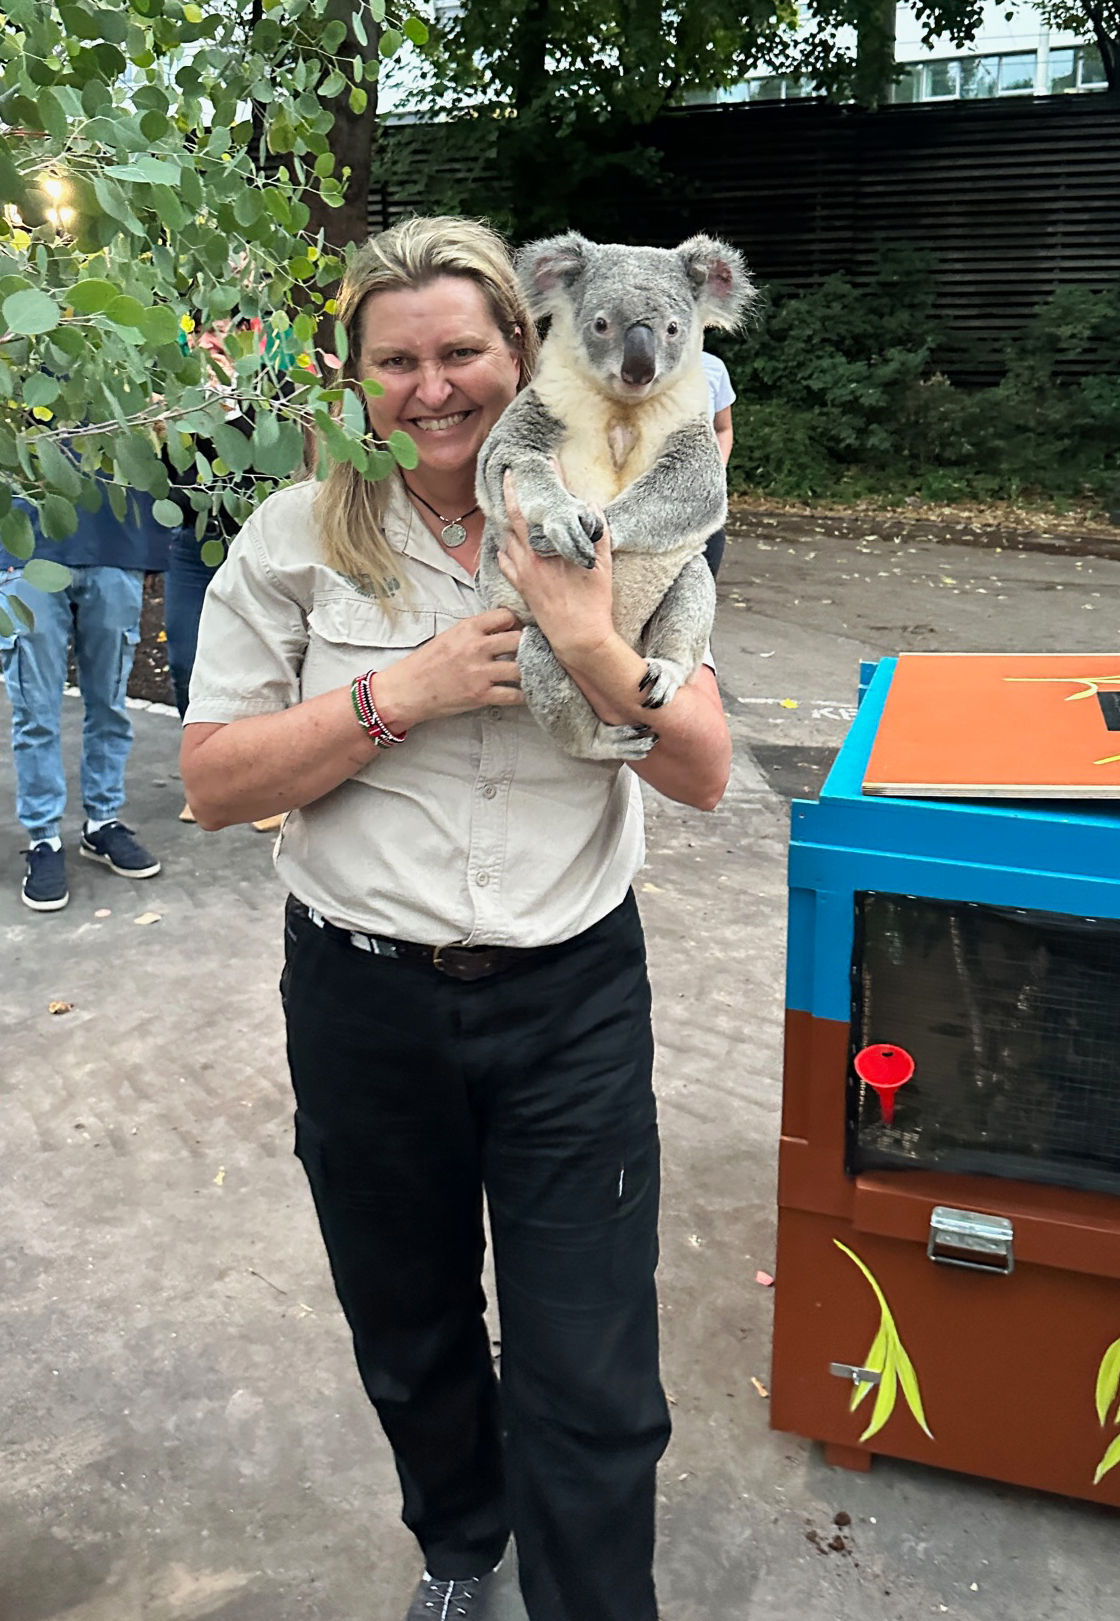 Die Koalas sind in der Wilhelma in Stuttgart angekommen.Tierpflegern Michelle Barnes hat die Tiere auf ihrem Flug aus Australien begleitet. In der Wilhelma trägt sie einen der Koalas in sein neues Domizil. Foto: Wilhelma Stuttgart / Marcel Schneider